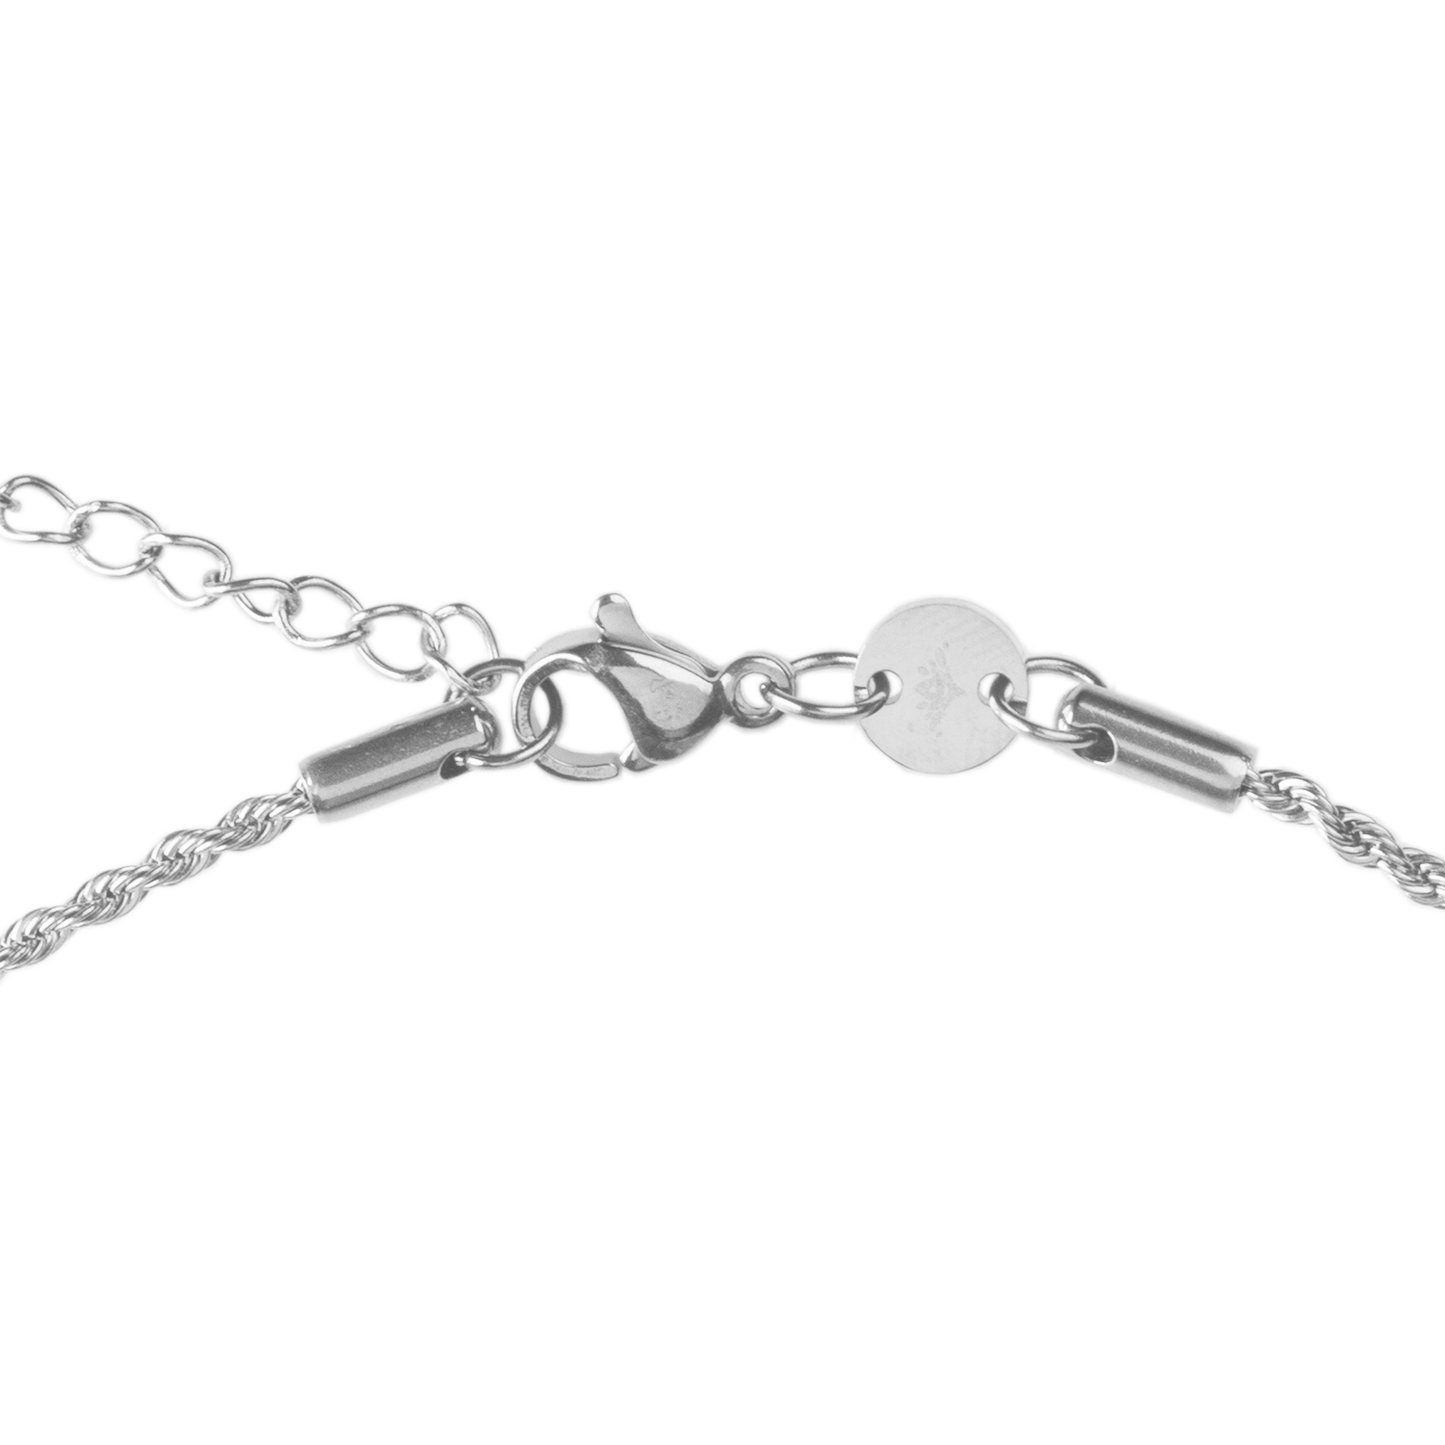 Aquarius Necklace Silver